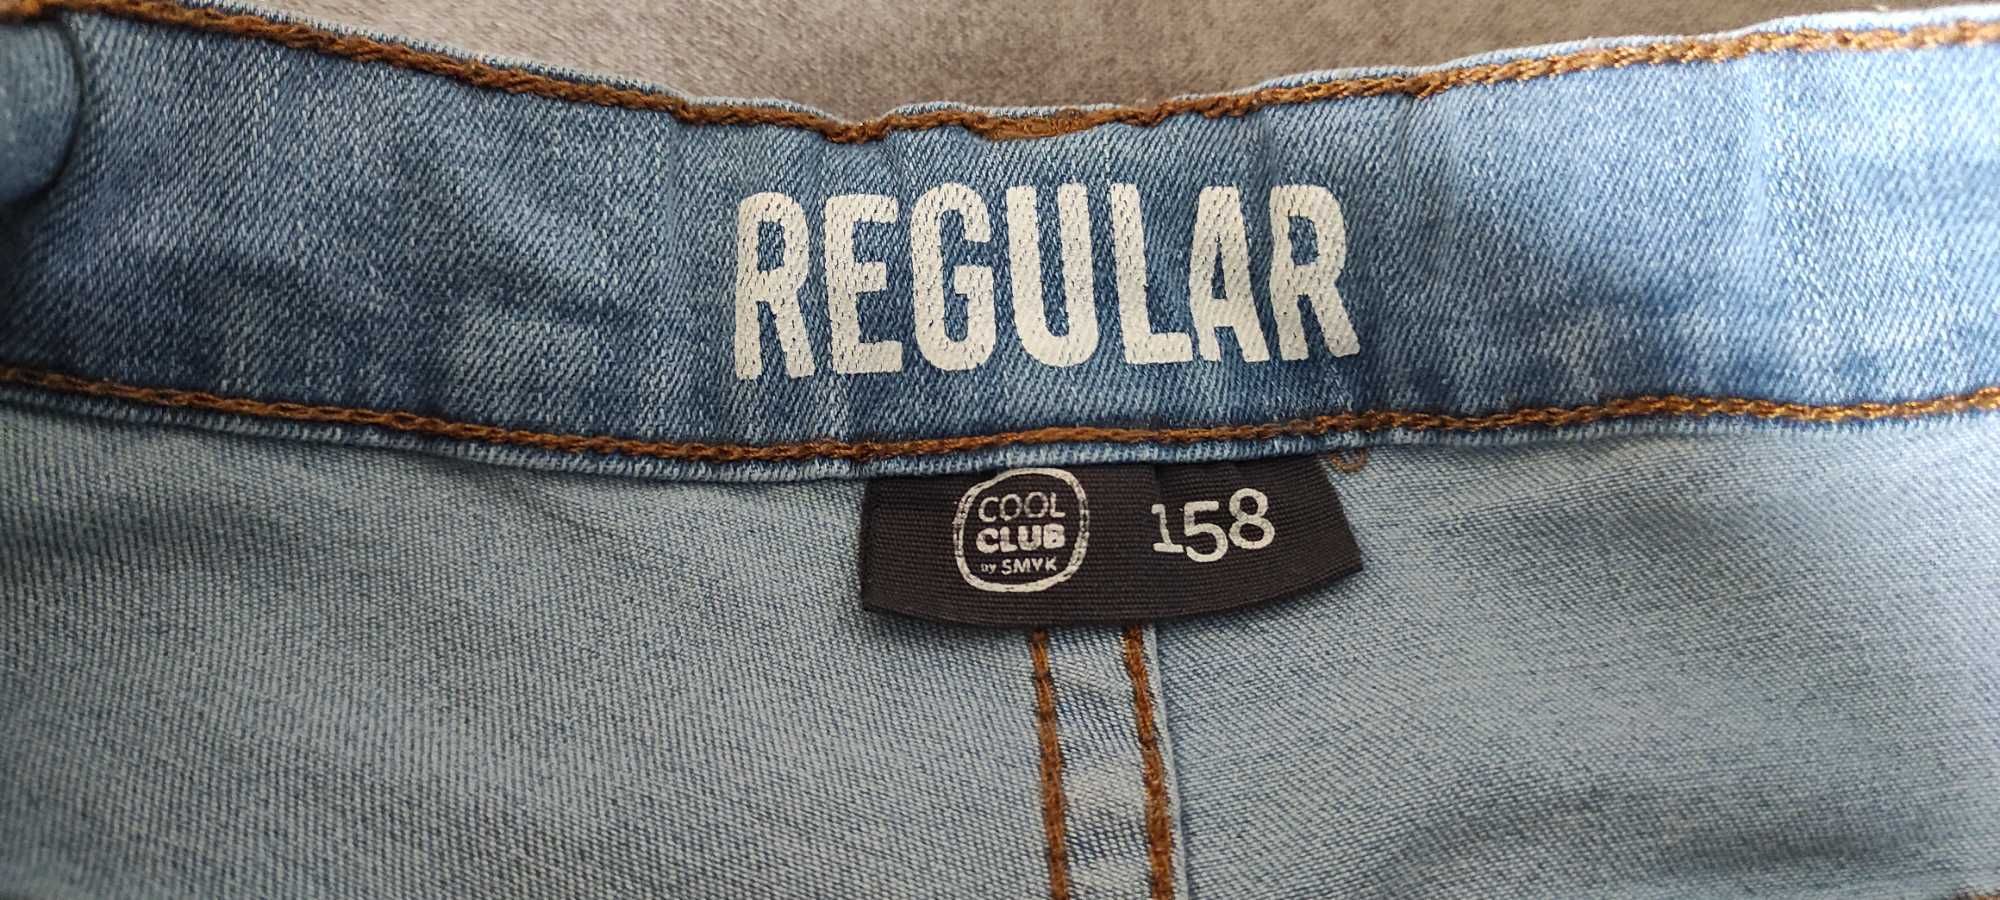 Jasnoniebieskie jeansy dla chłopca - Cool club - rozm. 158